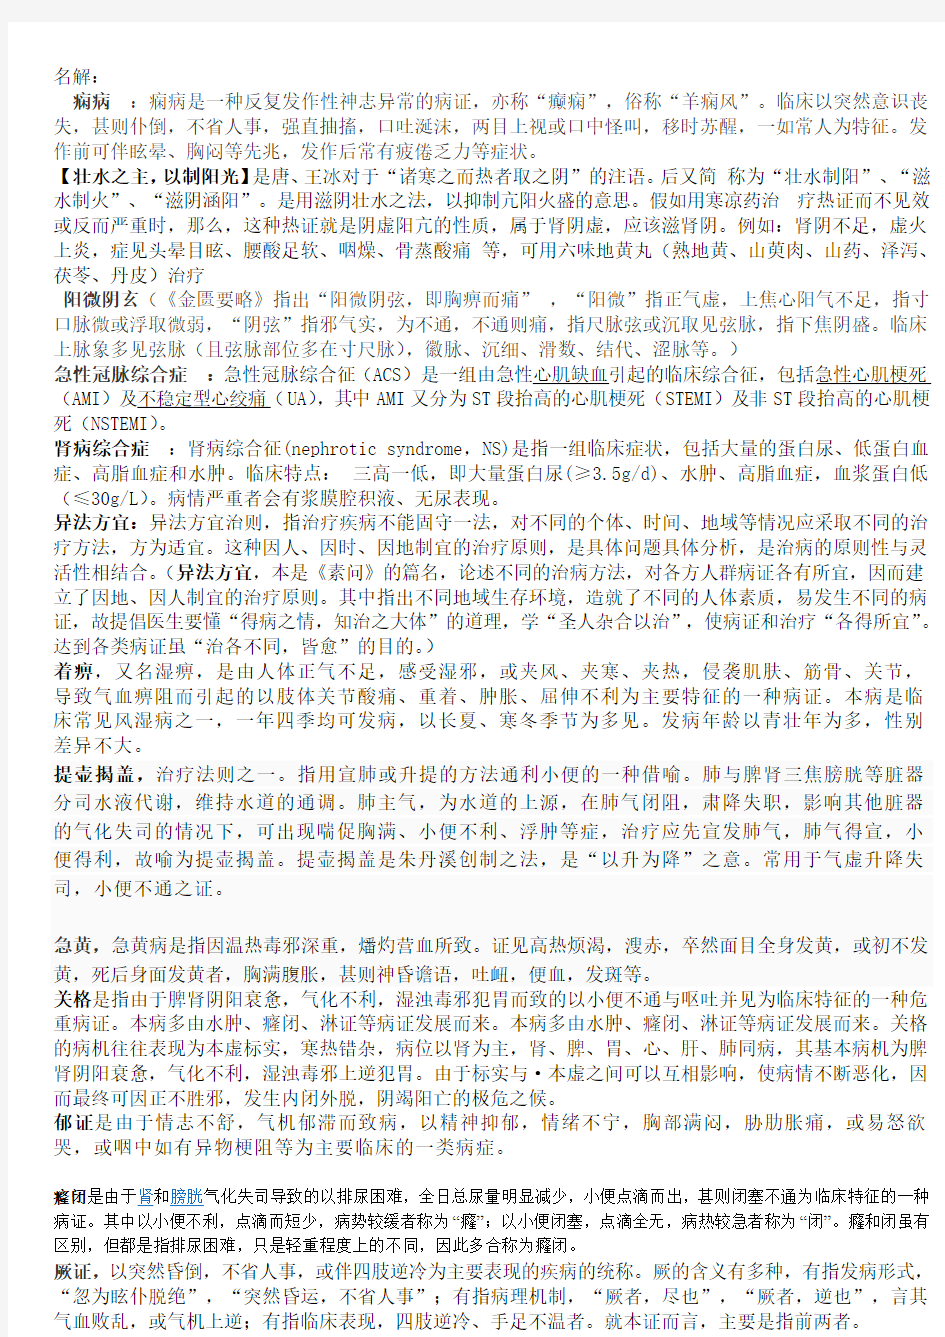 广东省中医中内中西内专业近五年笔试题目总结